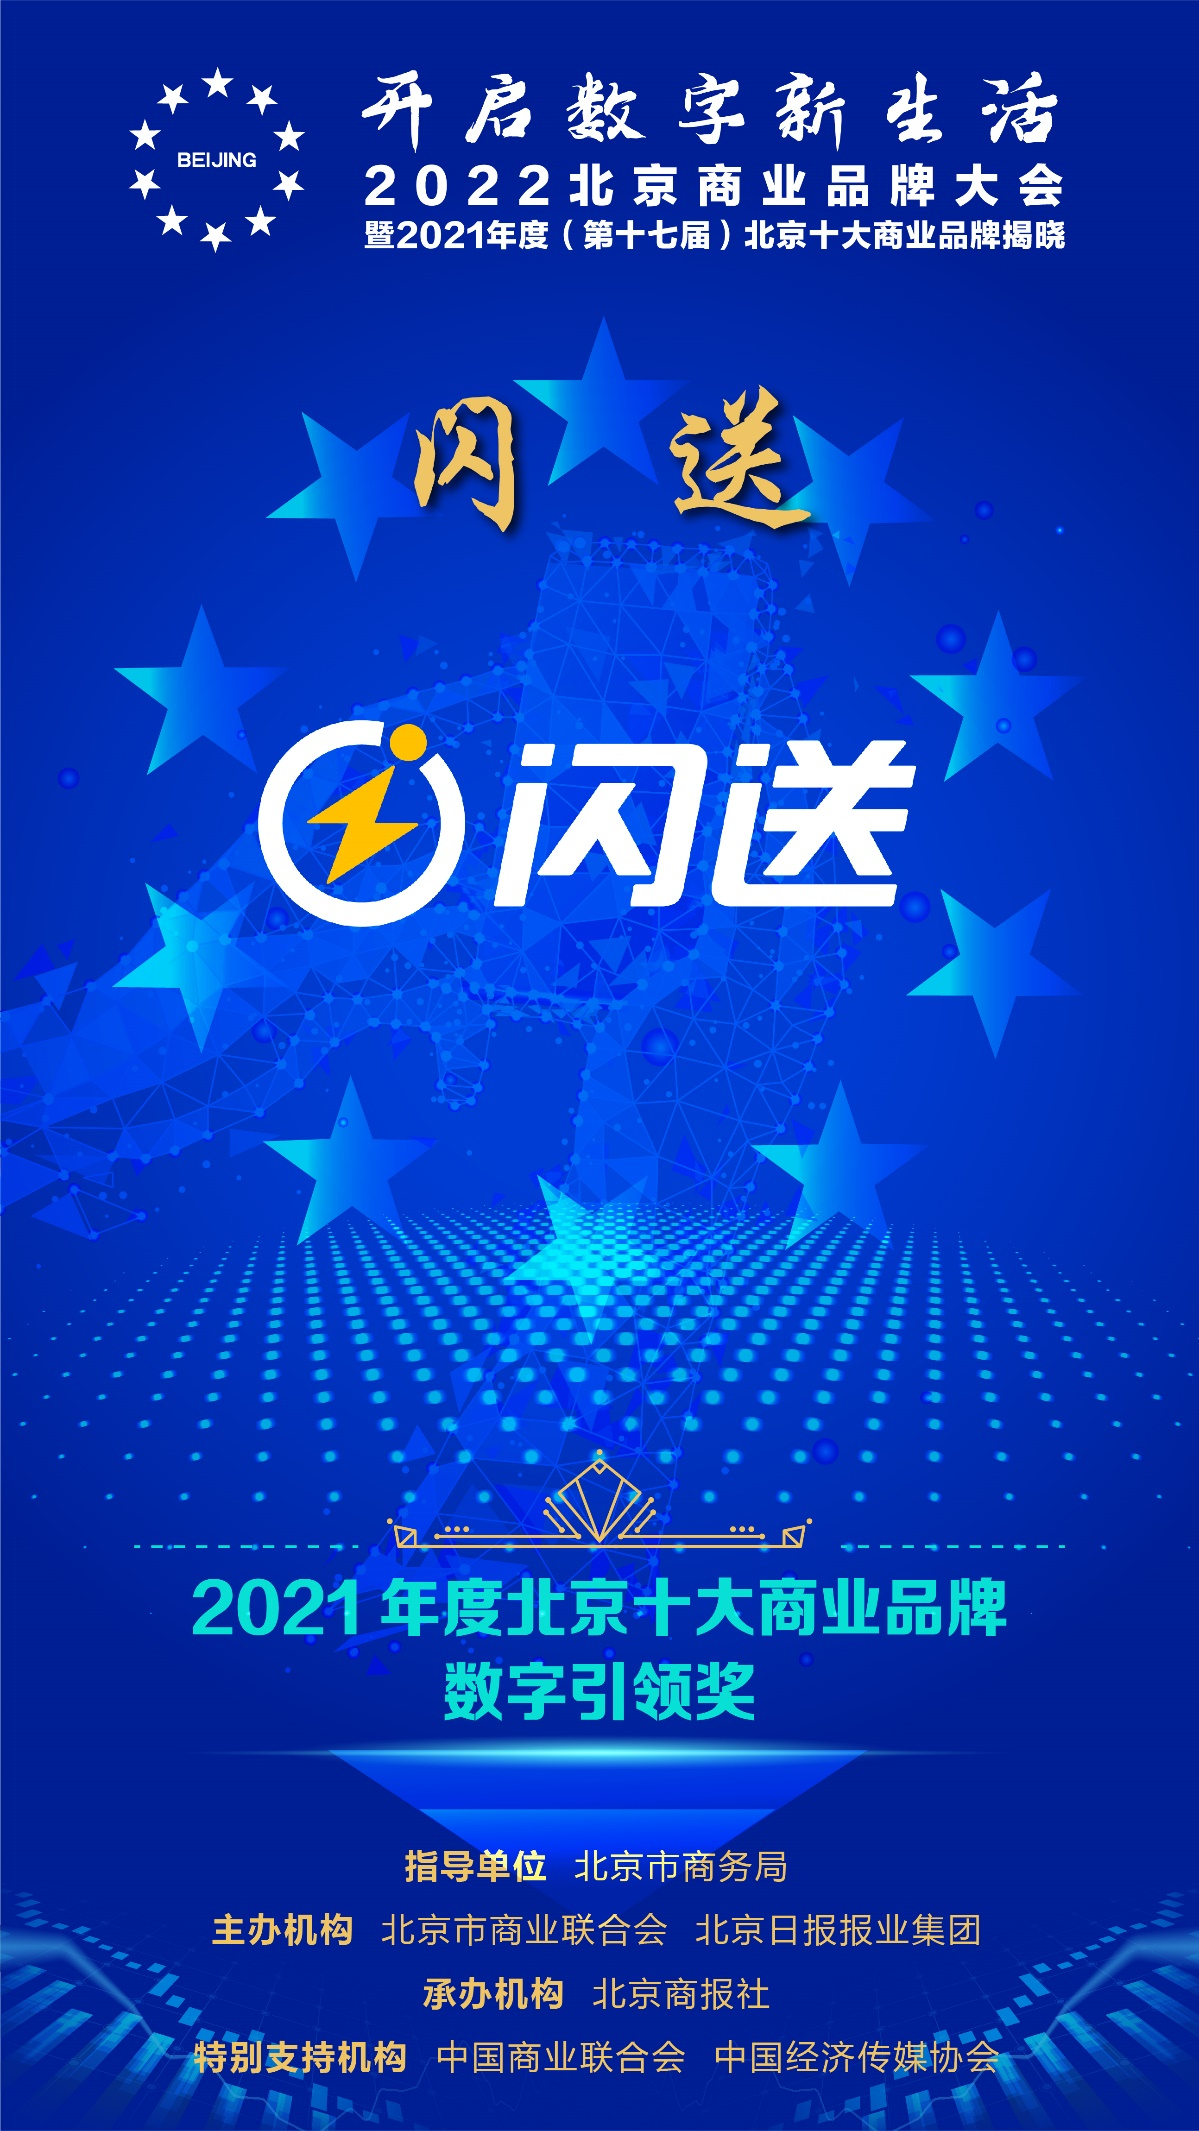 “闪送入选“2021年度北京十大商业品牌数字引领奖” 数字化实力推动物流行业转型